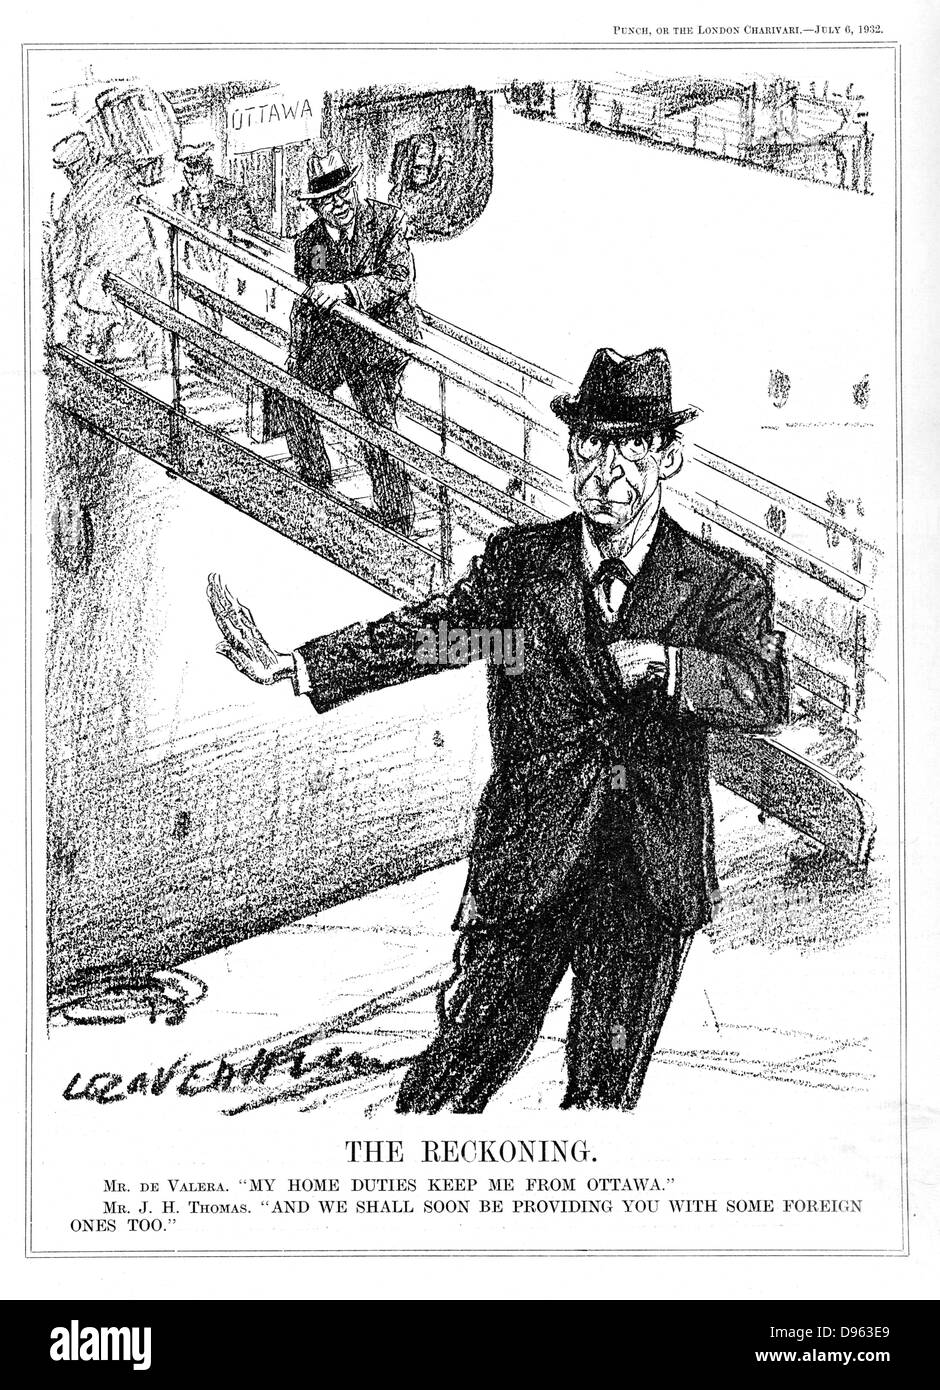 Eamon De Valera (1882-1975) American-Born Irish Staatsmann, sinken die Möglichkeit, die Konferenz von Ottawa über tarriffs zu sorgen, weil Oh seine Pflichten zu Hause in der Irish Free State, wo er gerade an die Macht gekommen war. Karikatur von L Ravenhill von 'Lochen' (London, 6. Juli 1932). Stockfoto